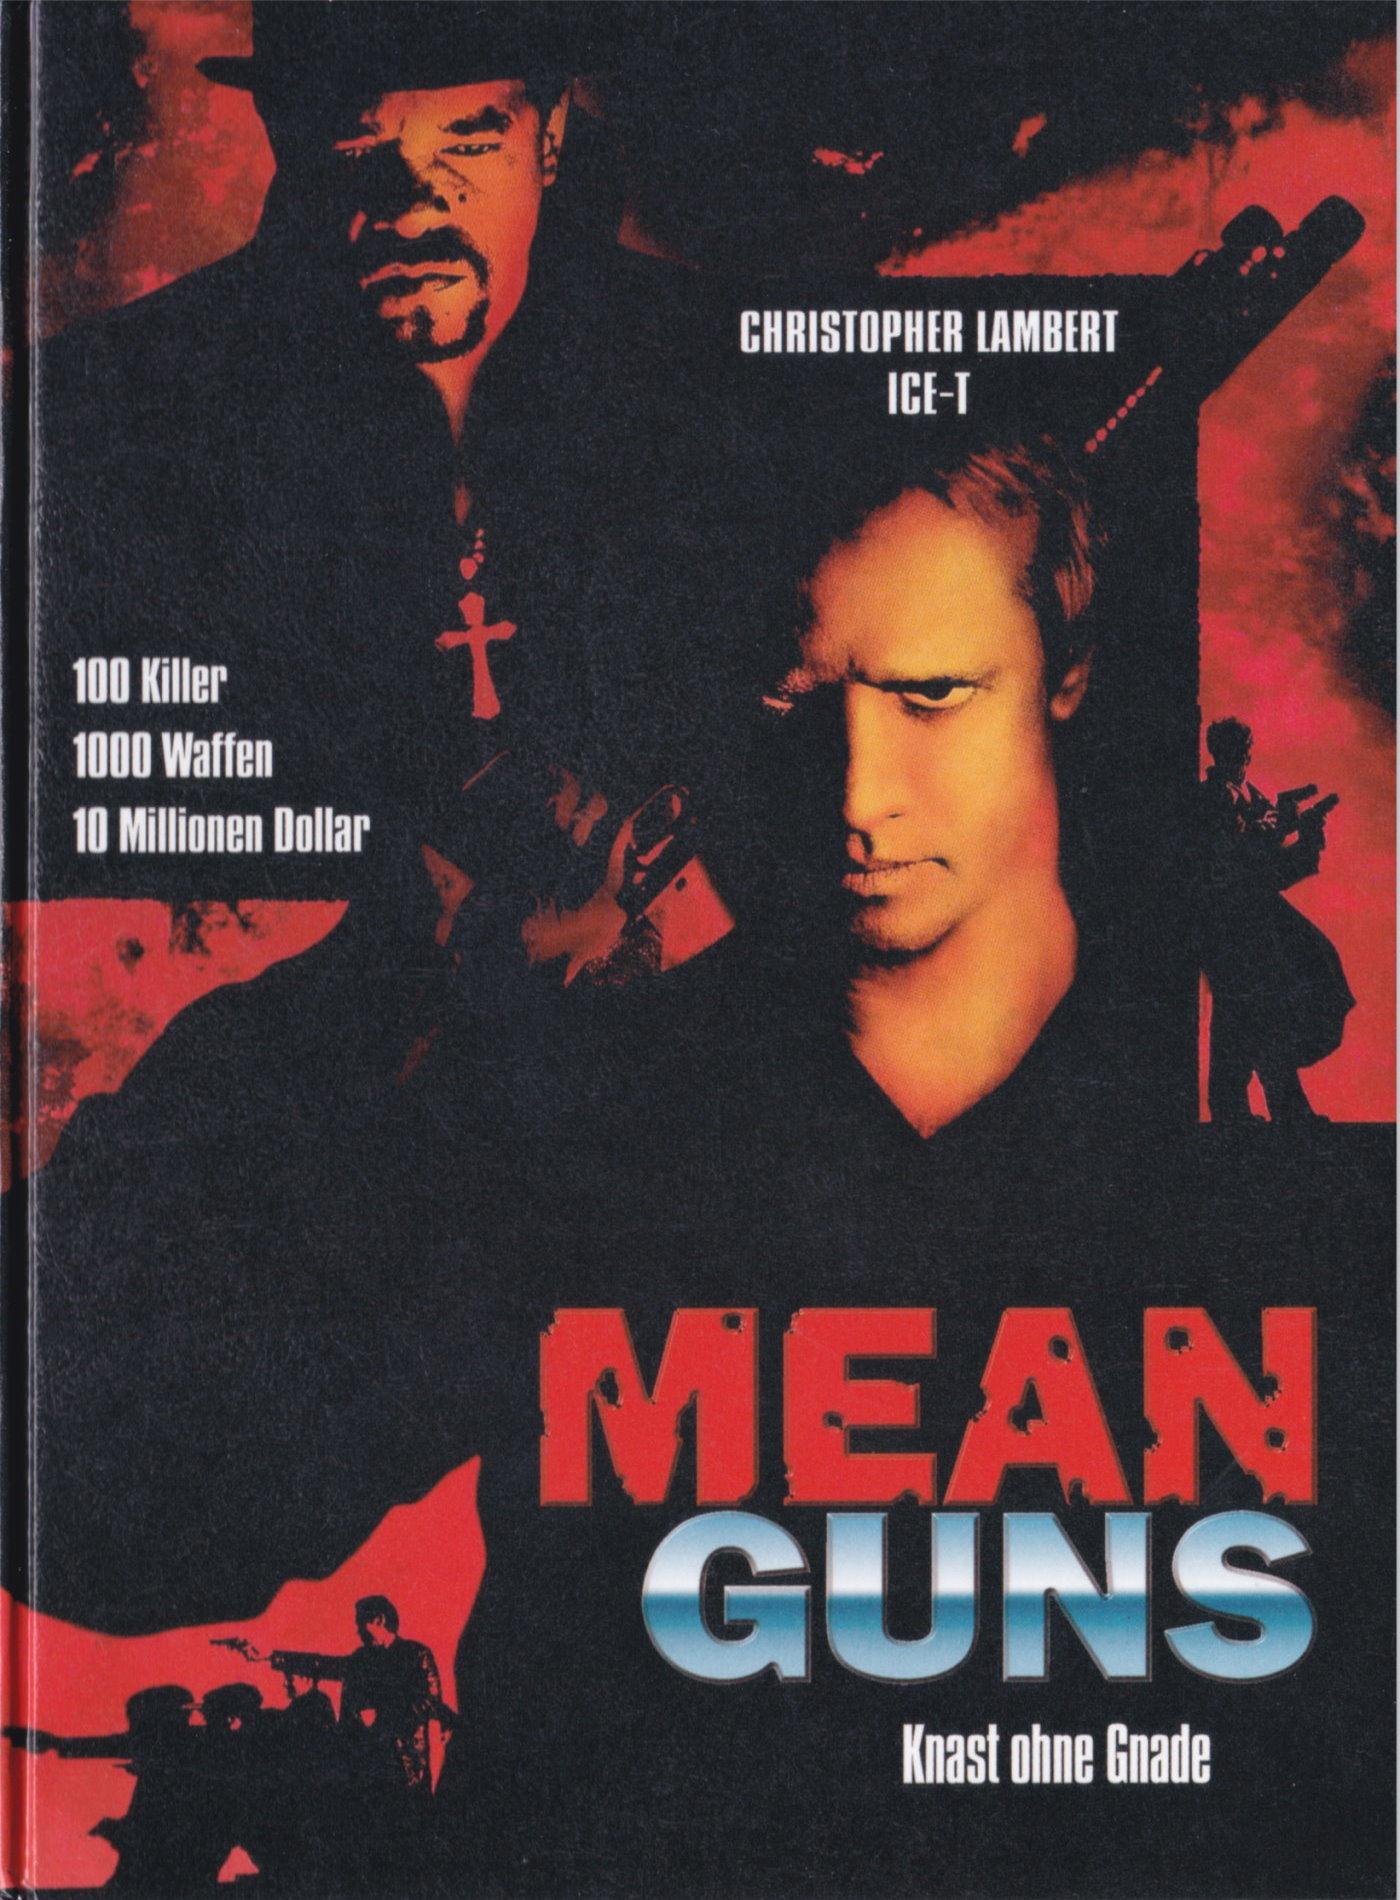 Cover - Mean Guns - Knast ohne Gnade.jpg